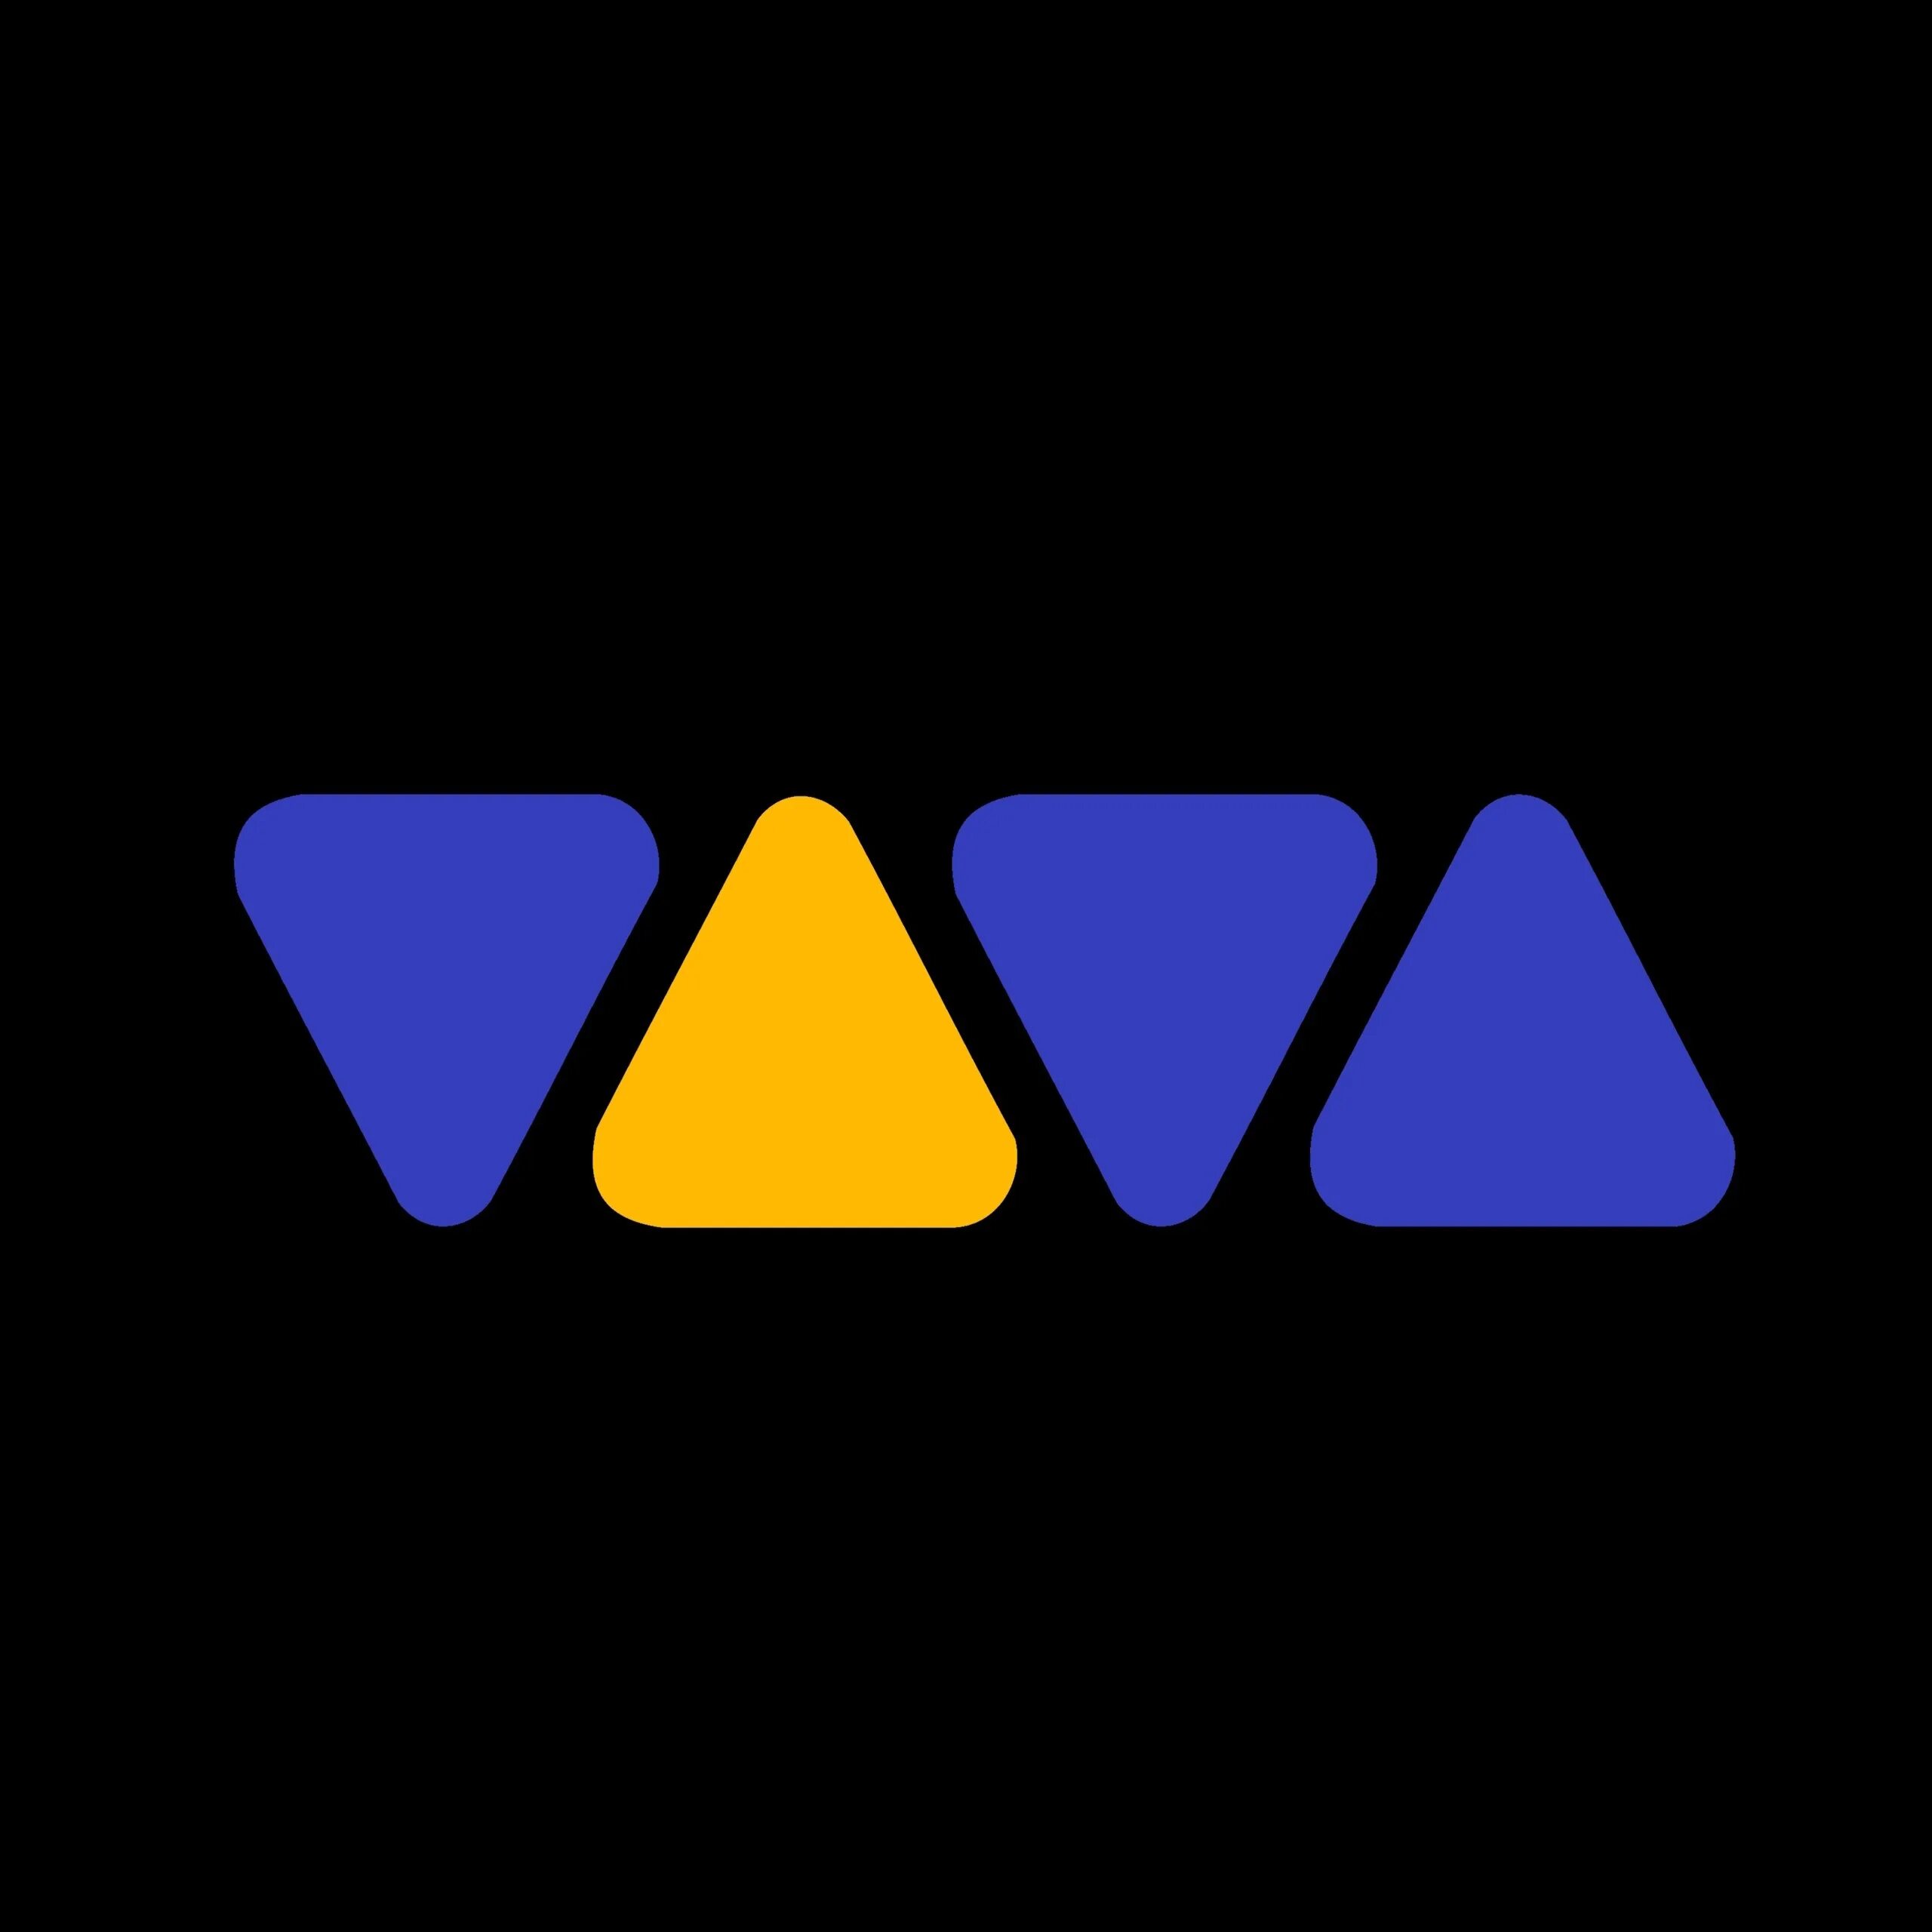 Музыкальные каналы клипы. Viva TV 1993. Viva TV 1995. Музыкальные каналы 90х. Viva музыкальный канал.